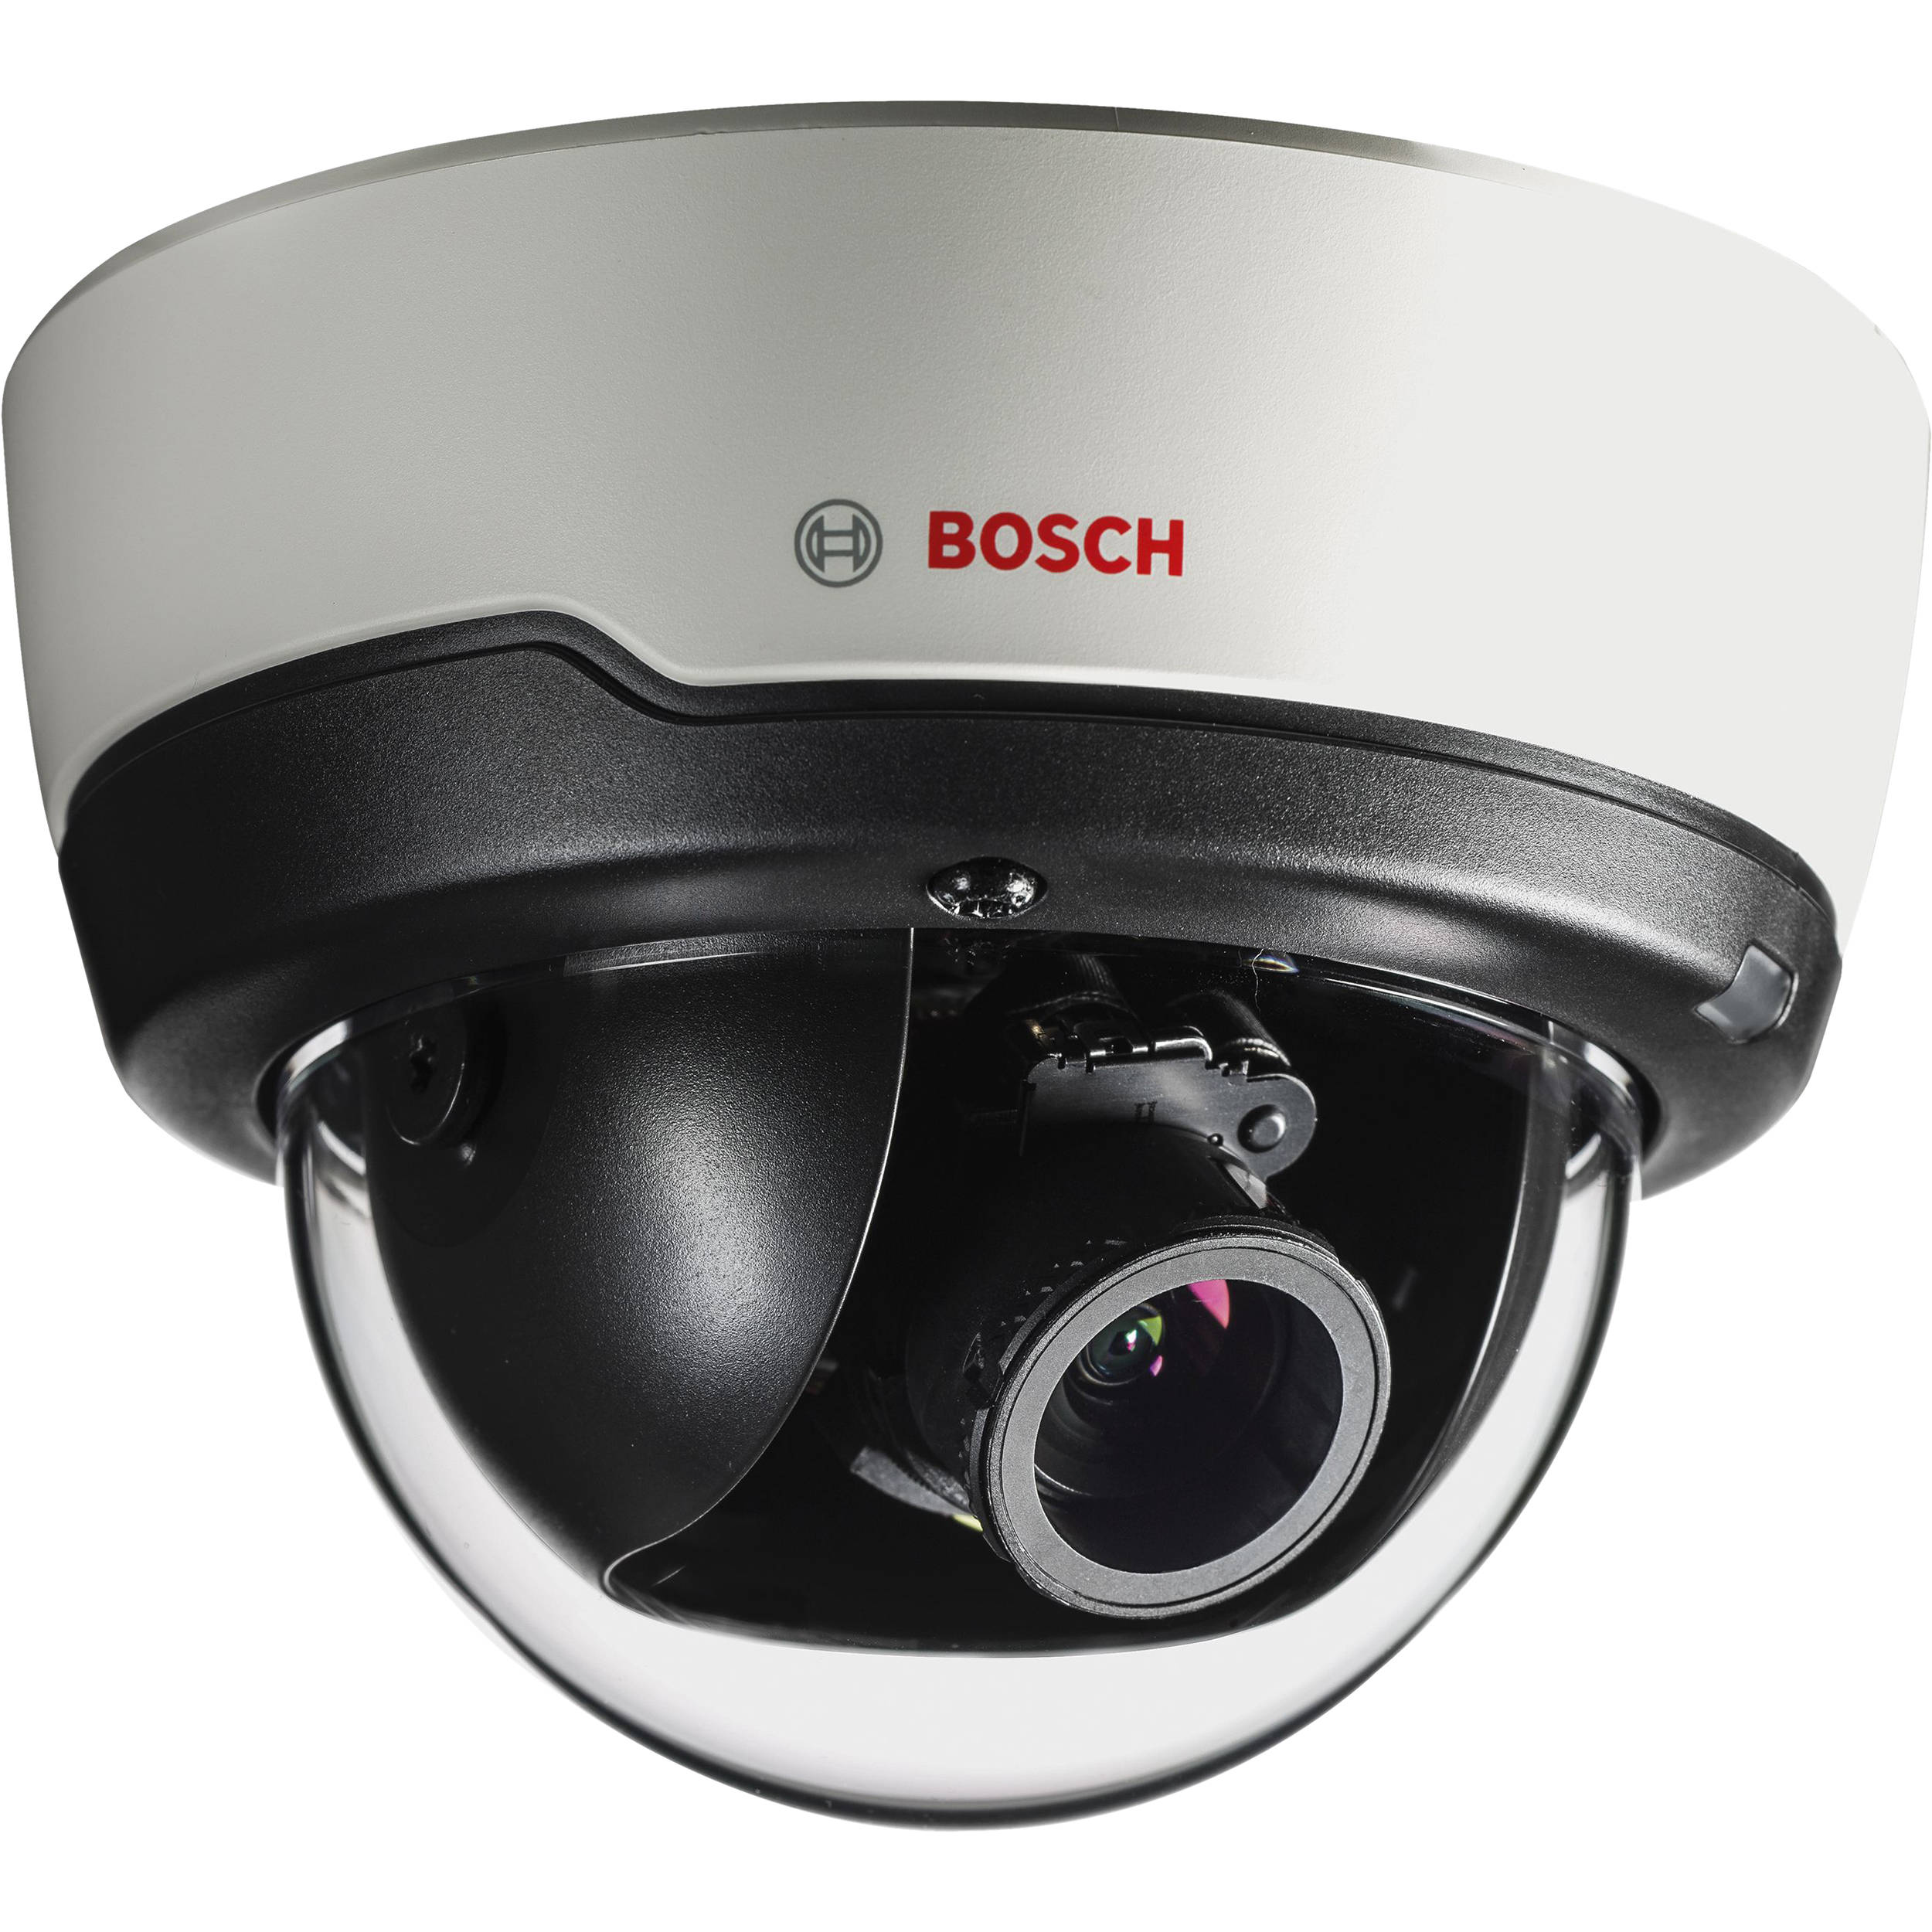 Bosch Flexidome 4000i 2mp Network Dome Camera Ndi 4502 A B H